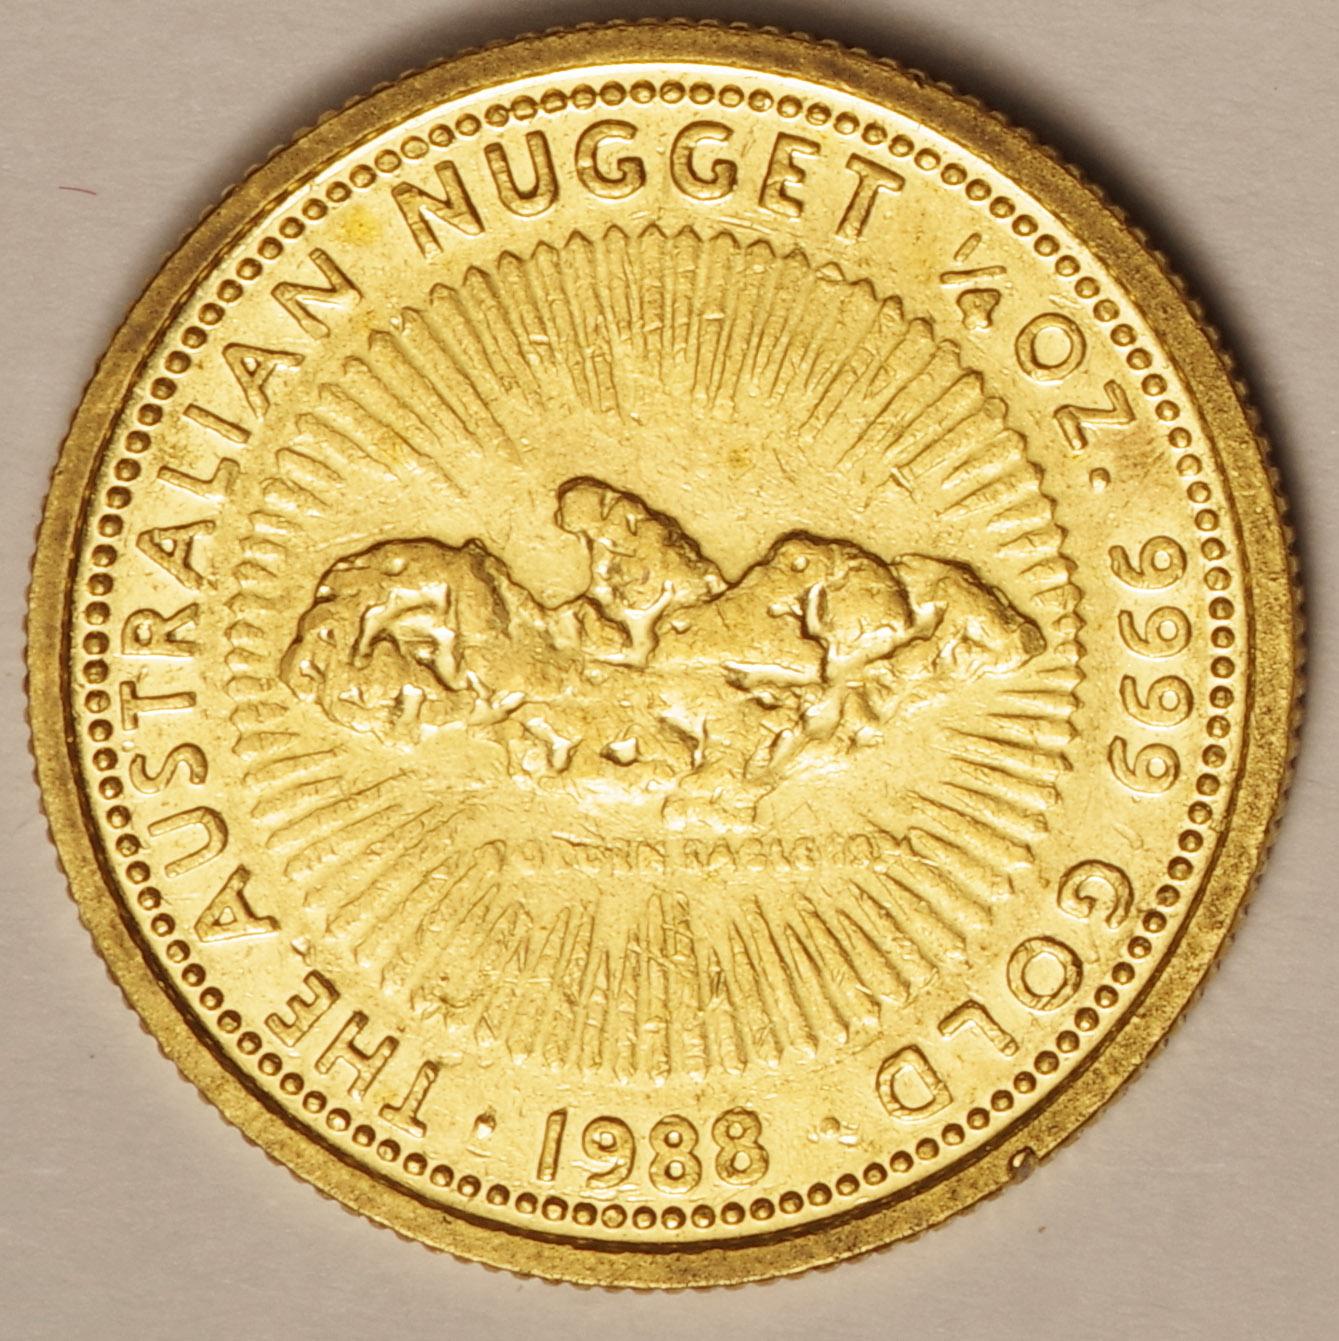 ｵｰｽﾄﾗﾘｱ-Australia ナゲット 25ドル金貨 1/4オンス 1988年 KM90